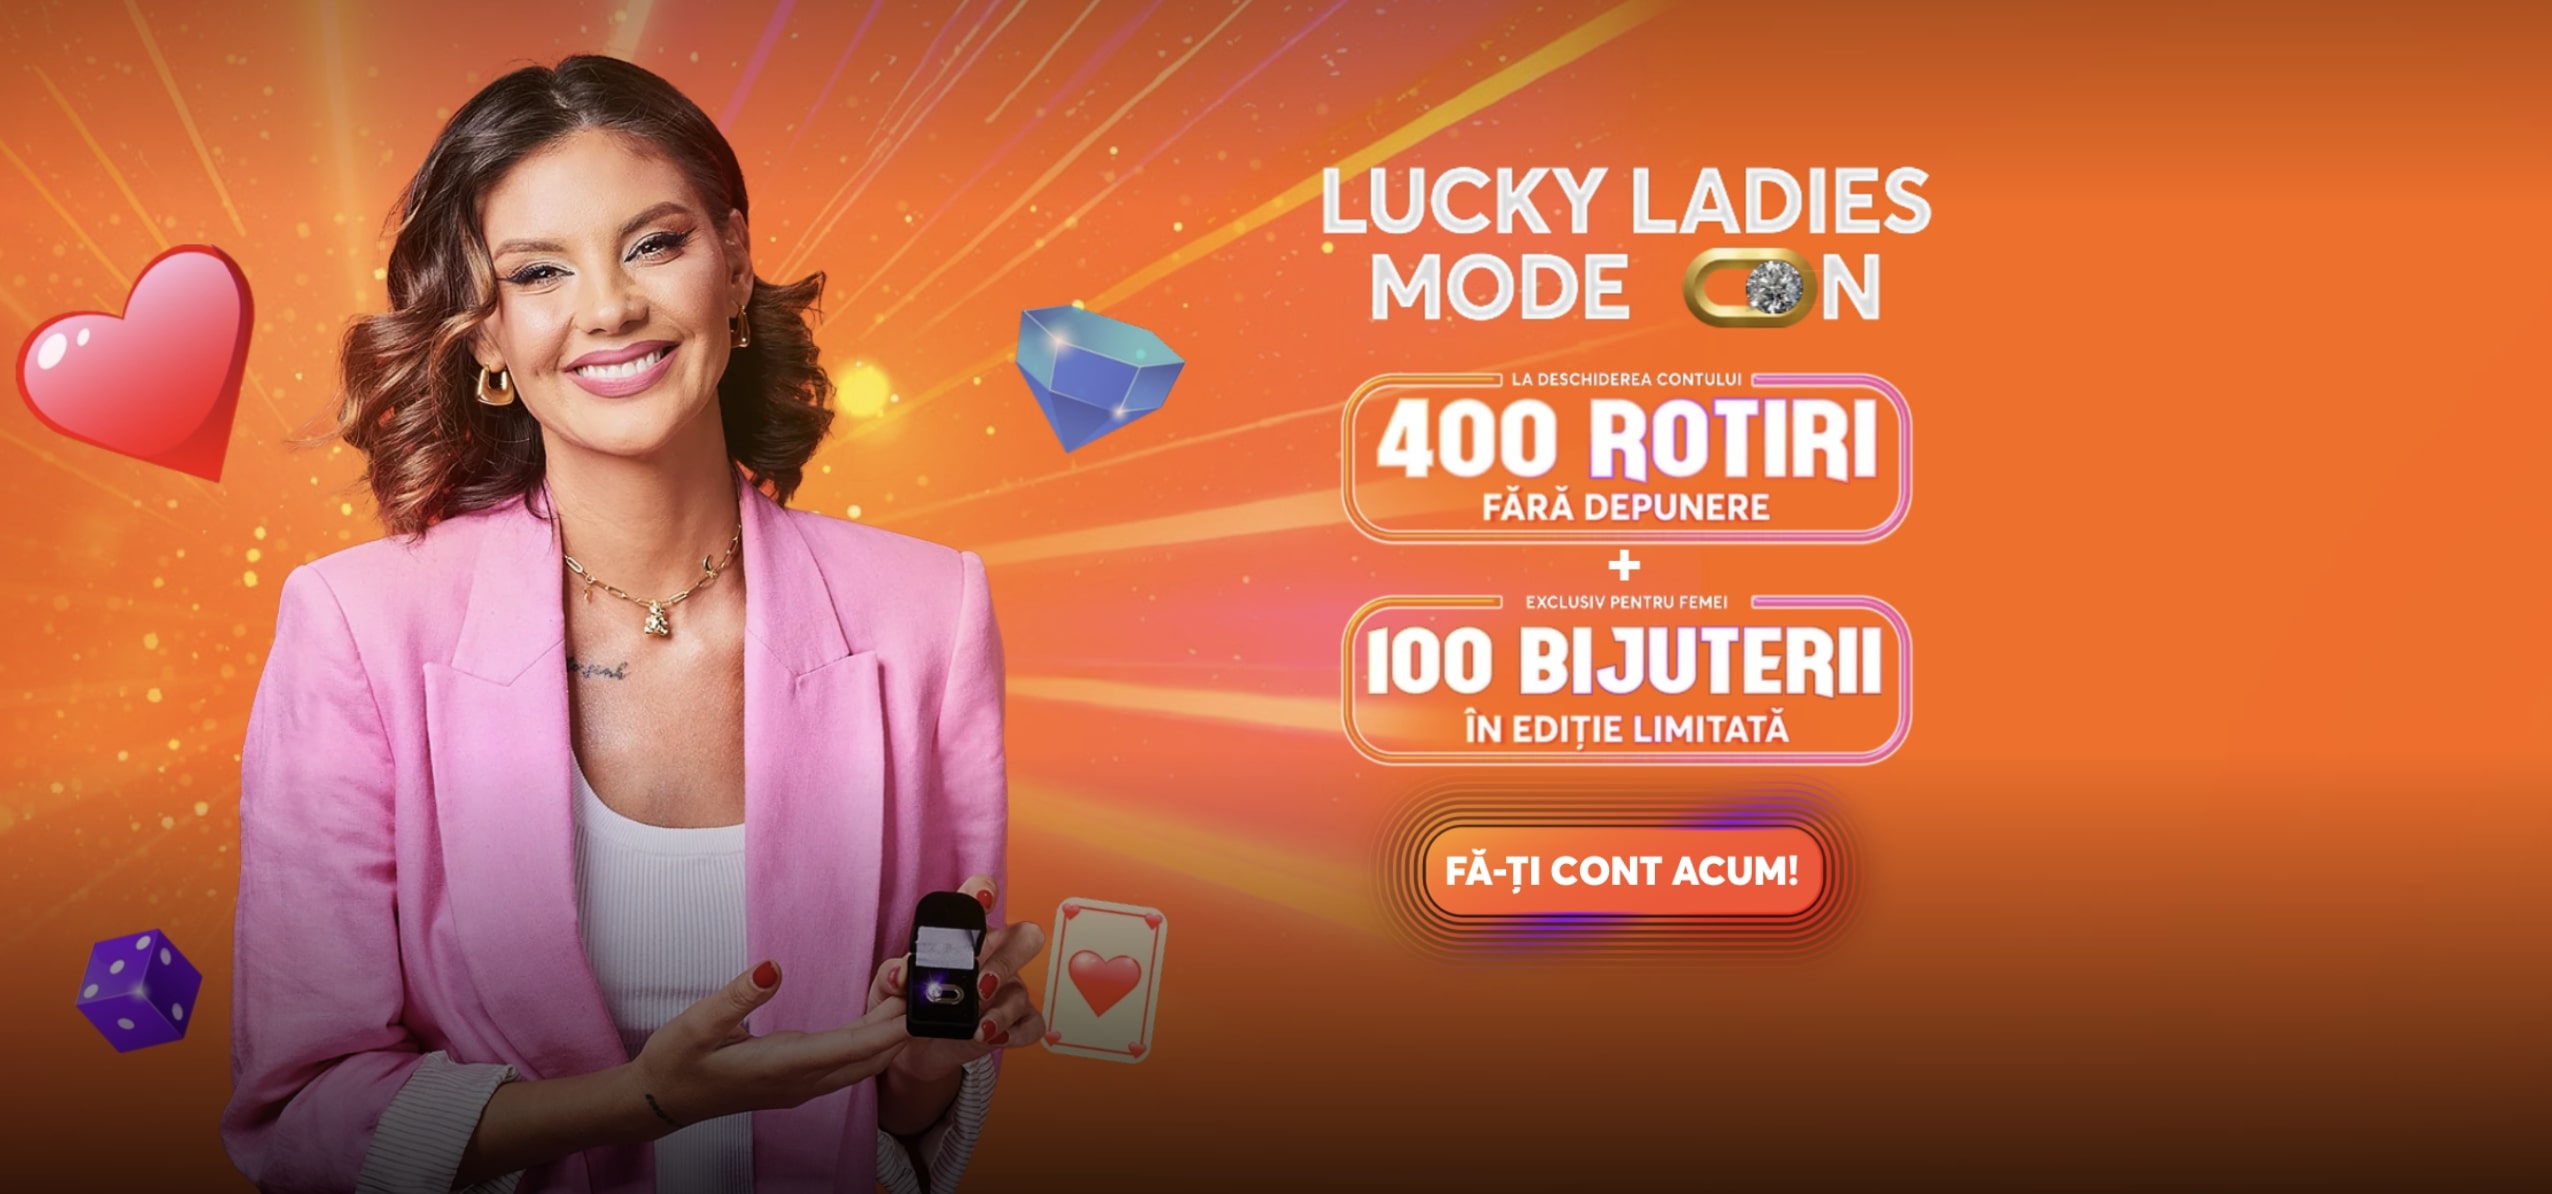 Betano prezintă un nou show cu premii – Lucky Ladies Mode On